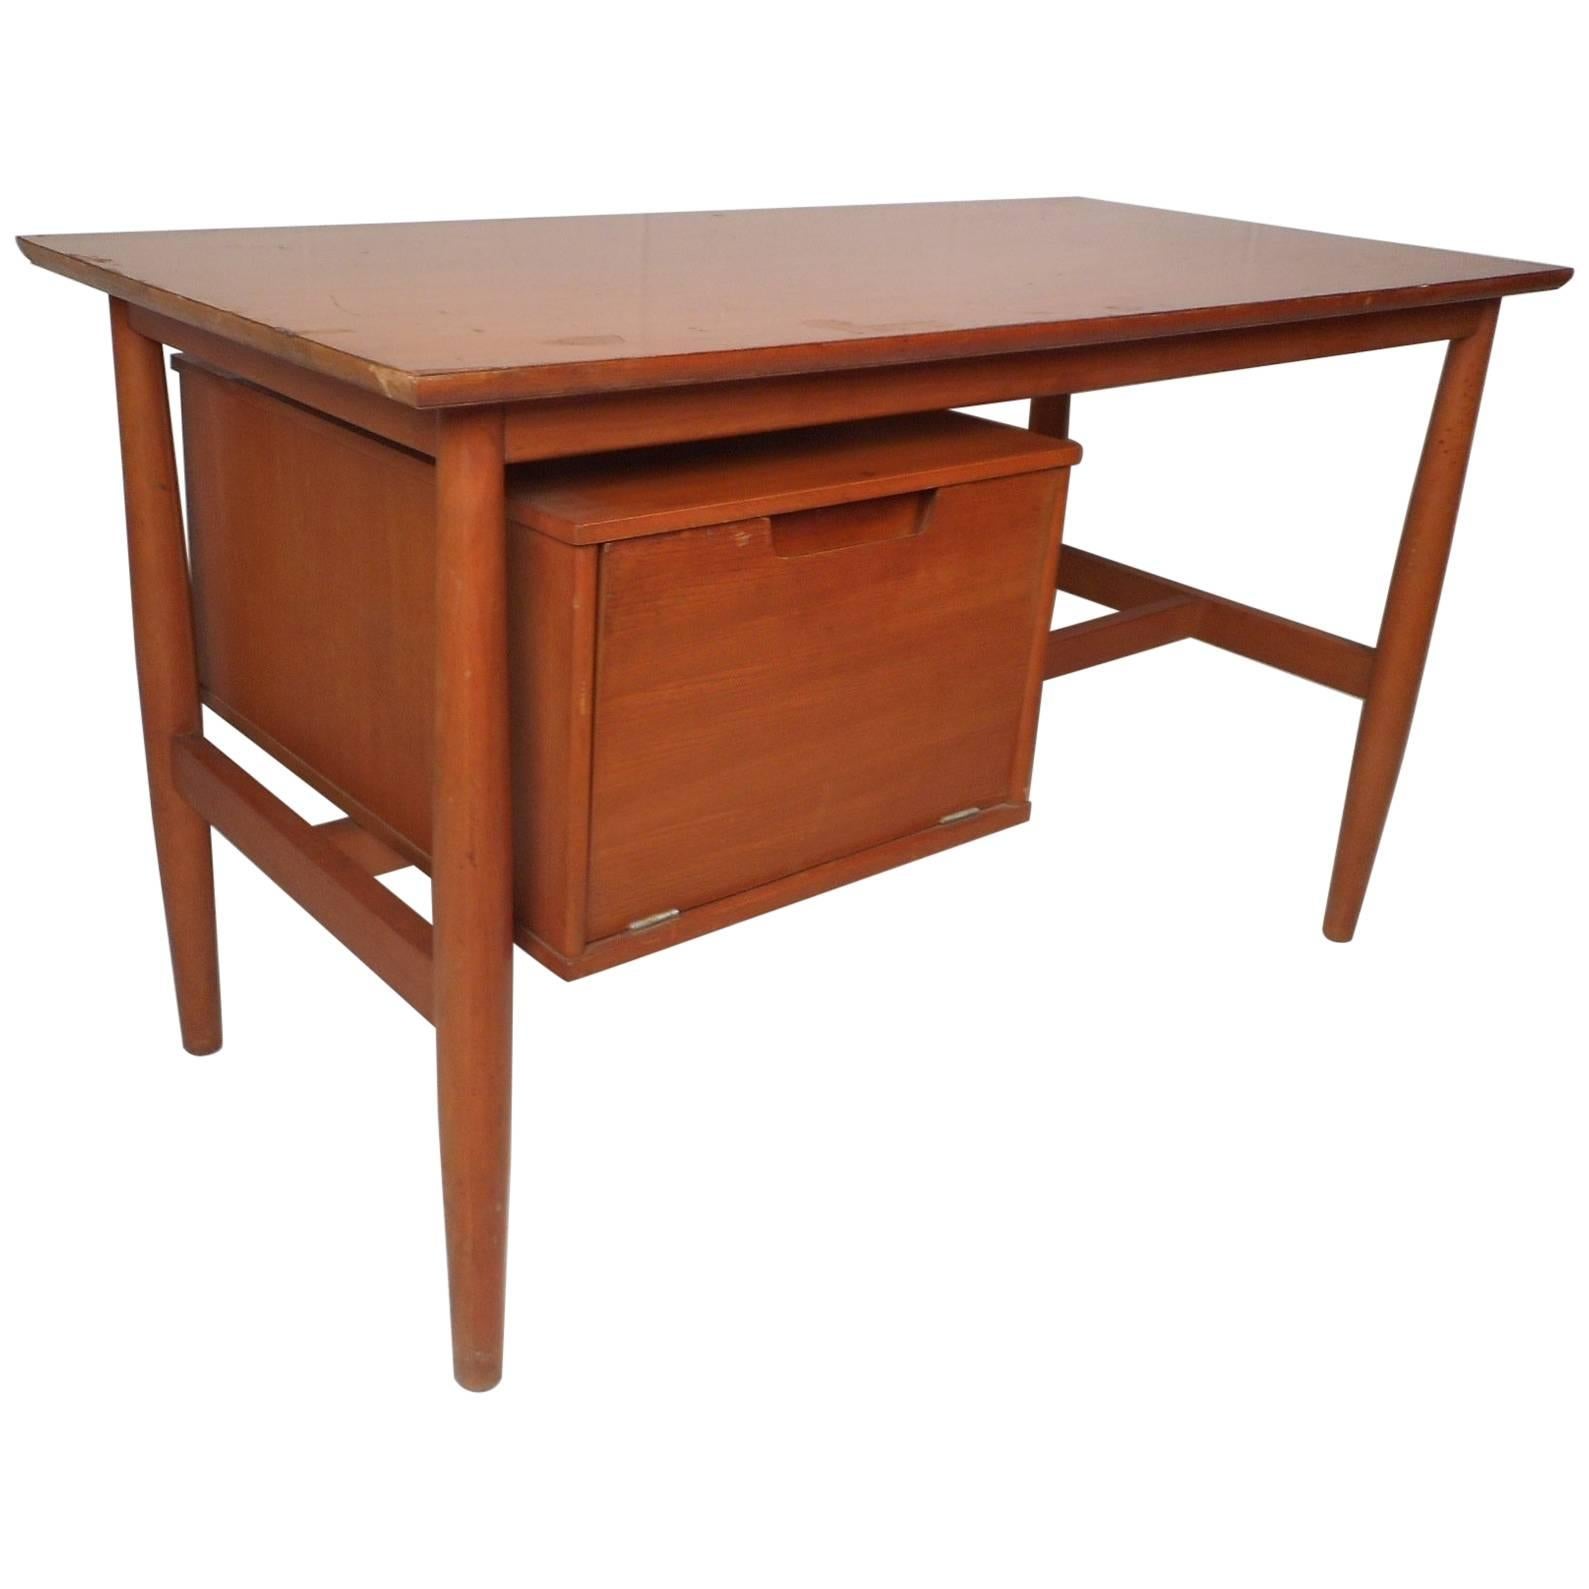 Vintage Modern Desk with a Finished Back by Drexel